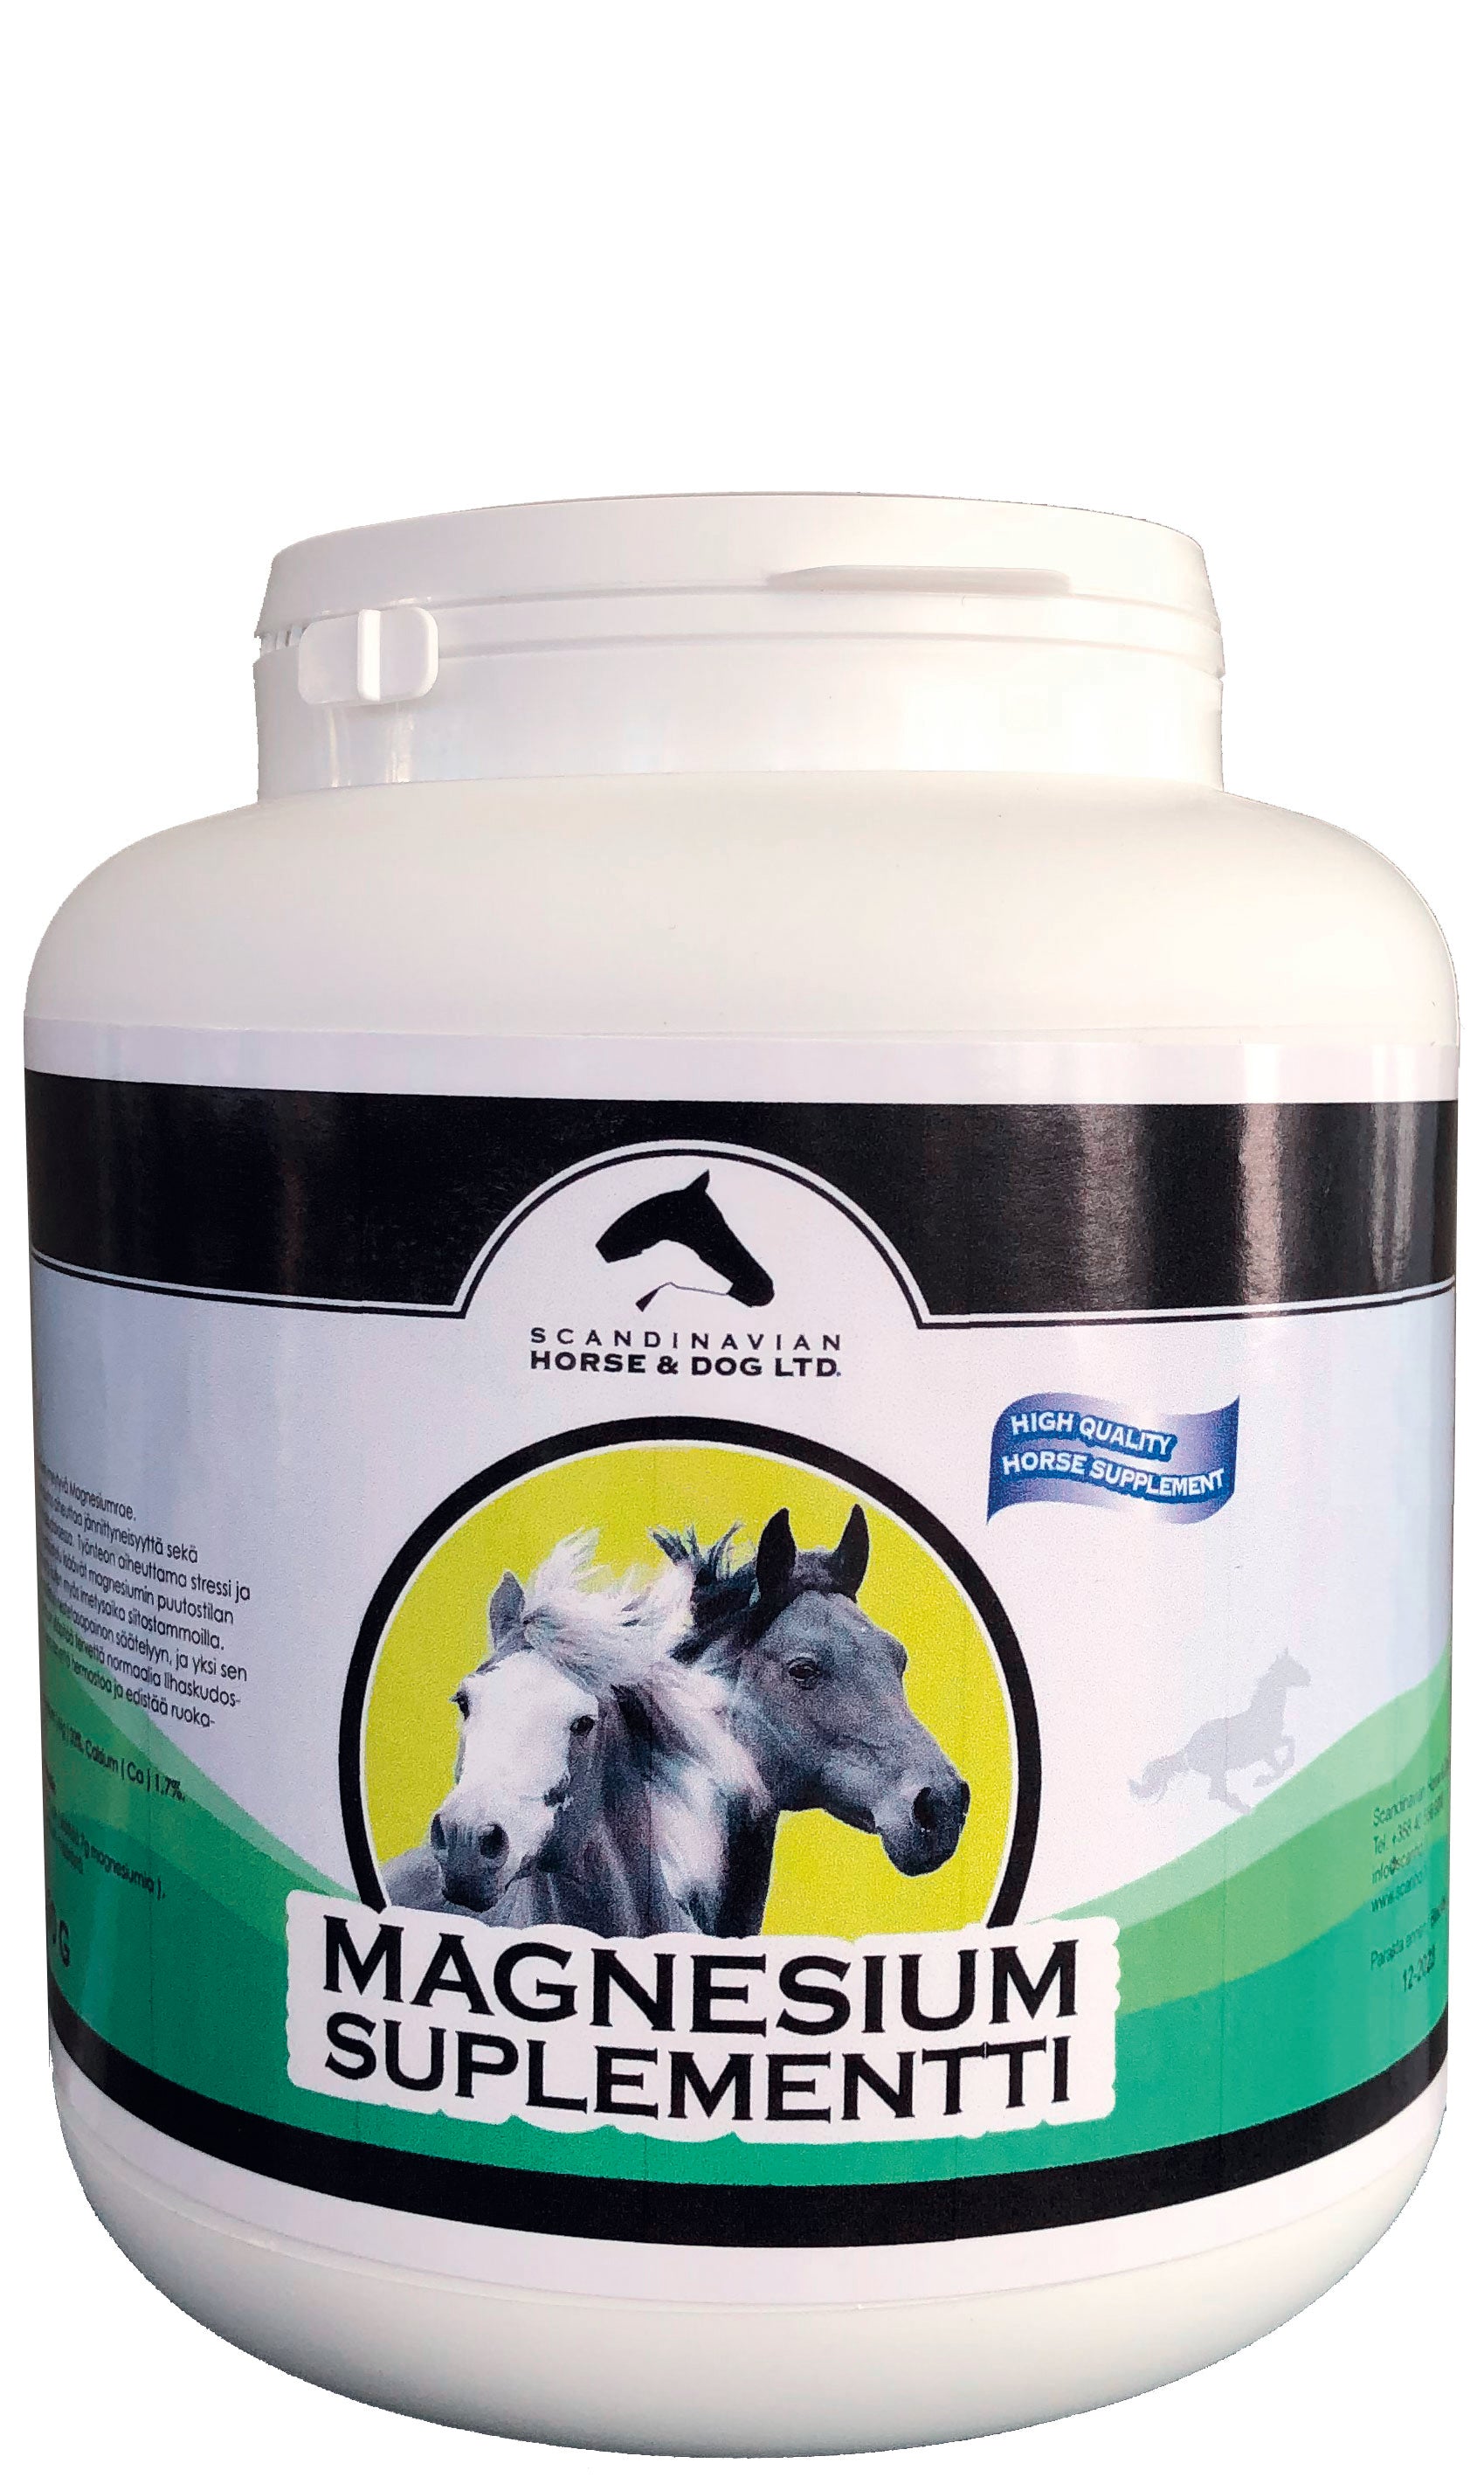 Magnesium Suplementti 2,8 kg – Scandinavian Horse & Dog